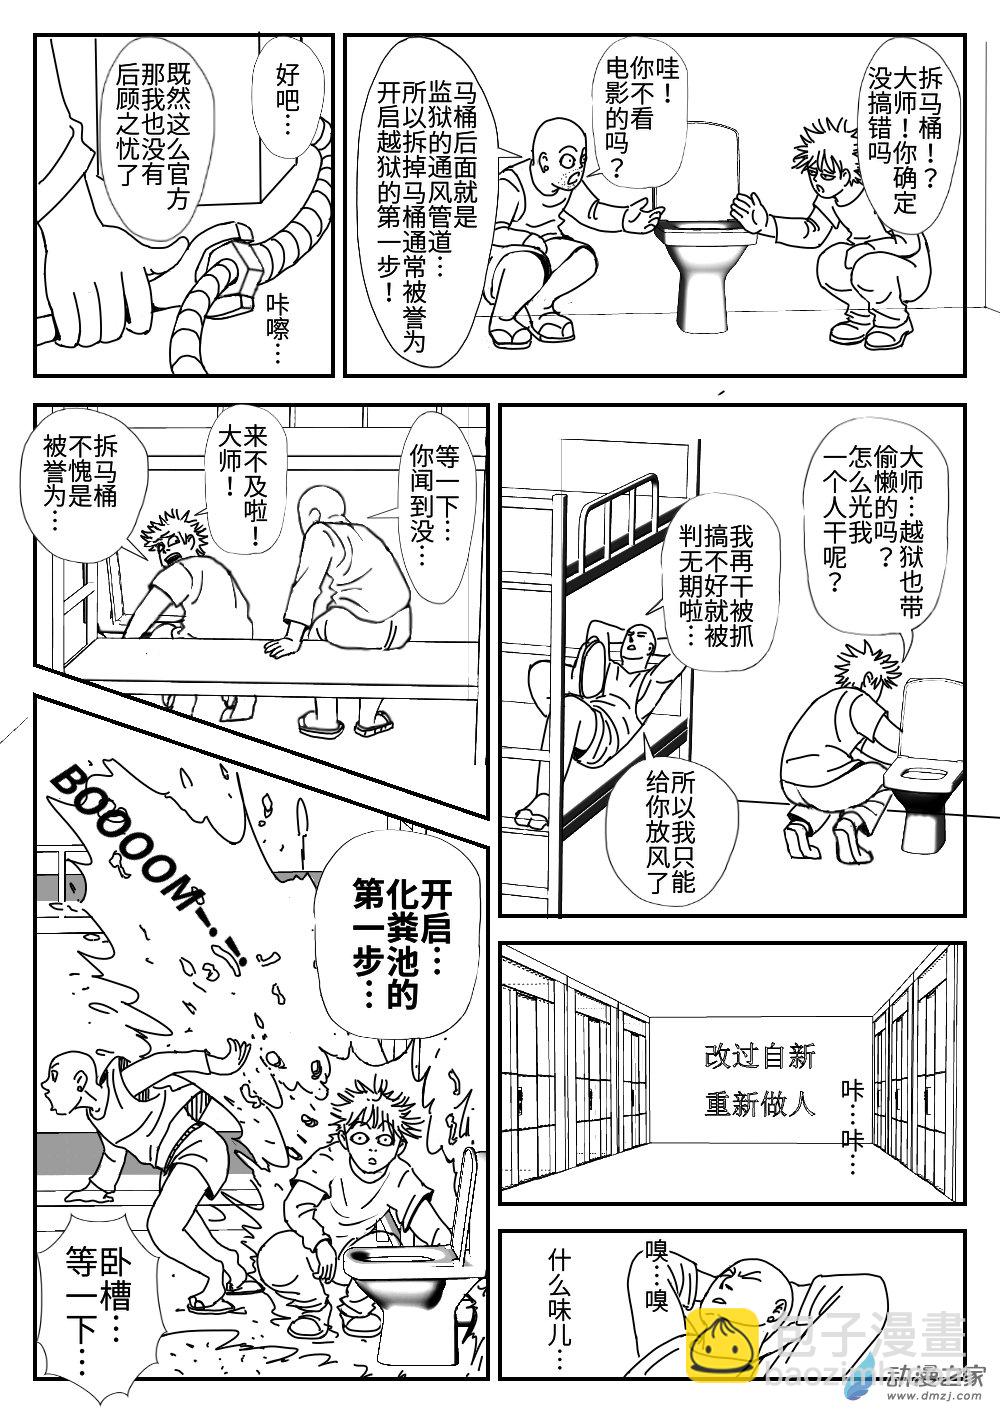 K神的短篇漫畫集 - 04 越獄 - 3